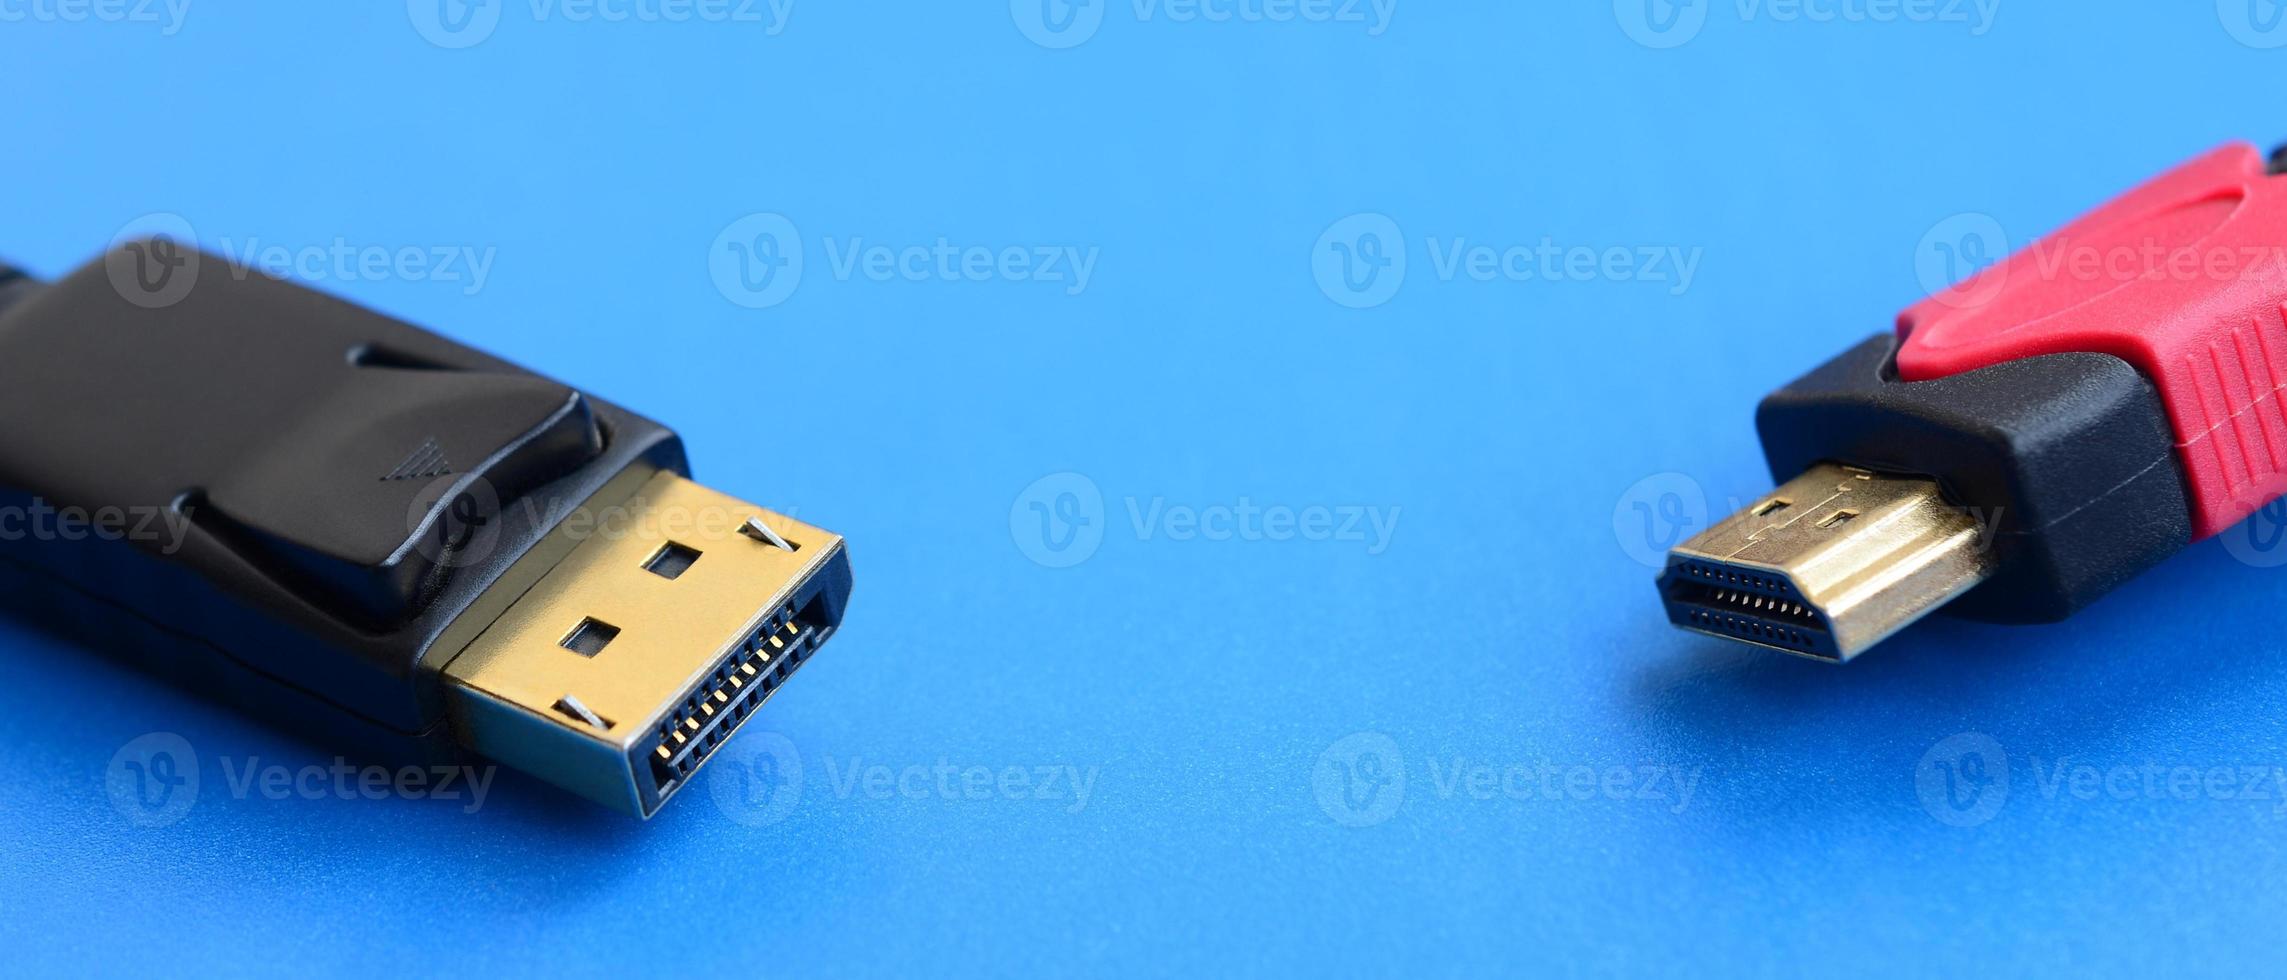 audio video hdmi computer kabel plug en 20-pins mannetje displayport goud geplateerd connector voor een vlekkeloos verbinding Aan een blauw achtergrond foto